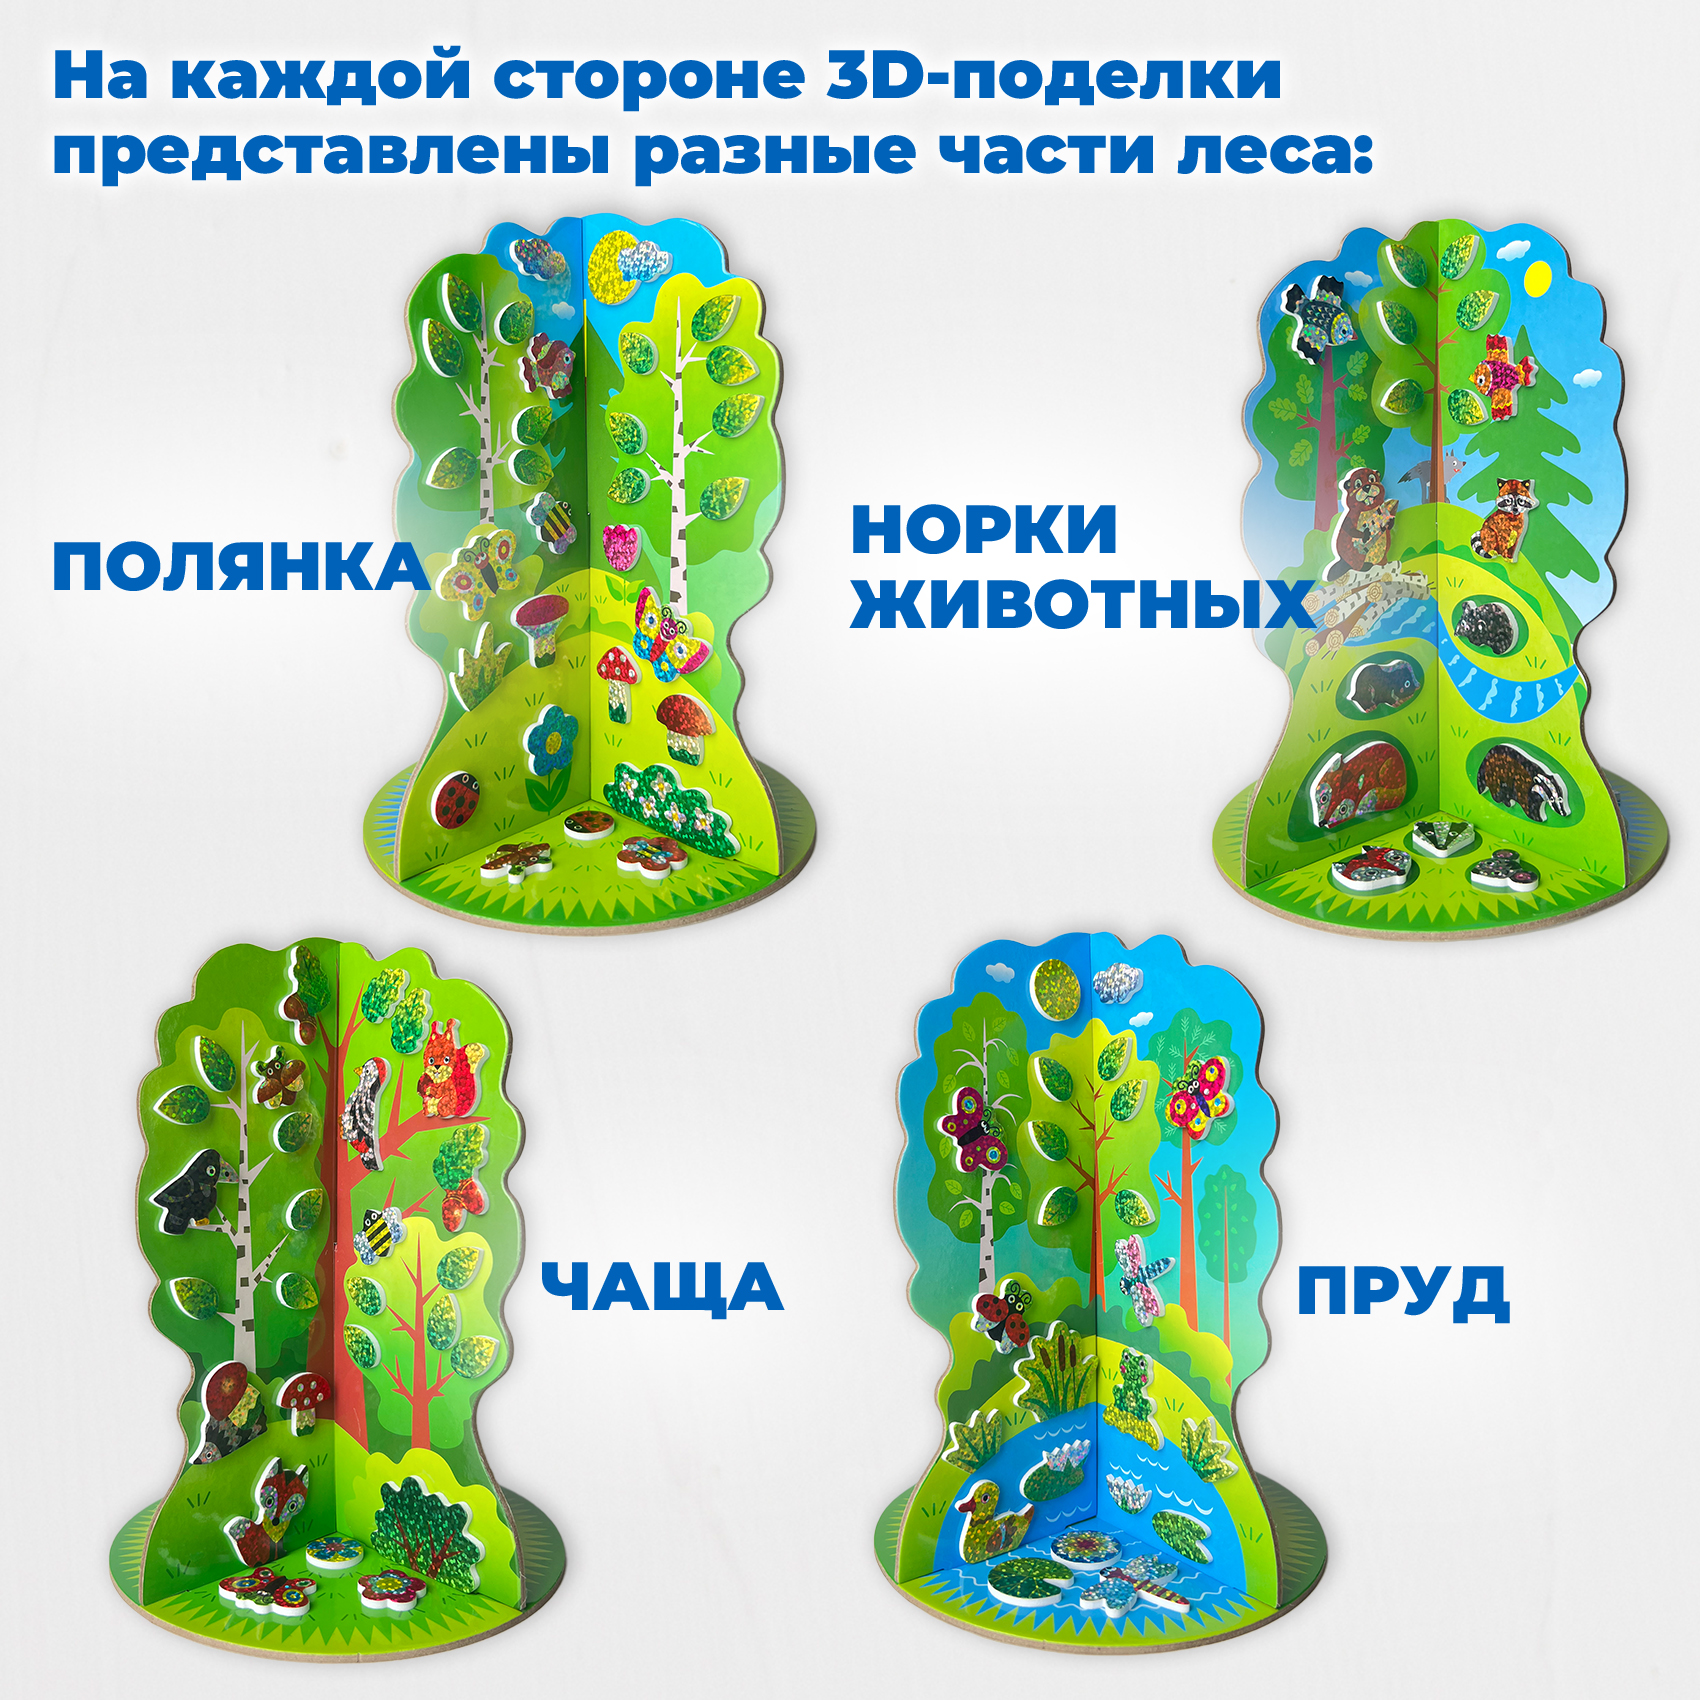 Аппликация 3D Дрофа-Медиа Мягкая картинка. 3D игрушка. В лесу 4380 - фото 3